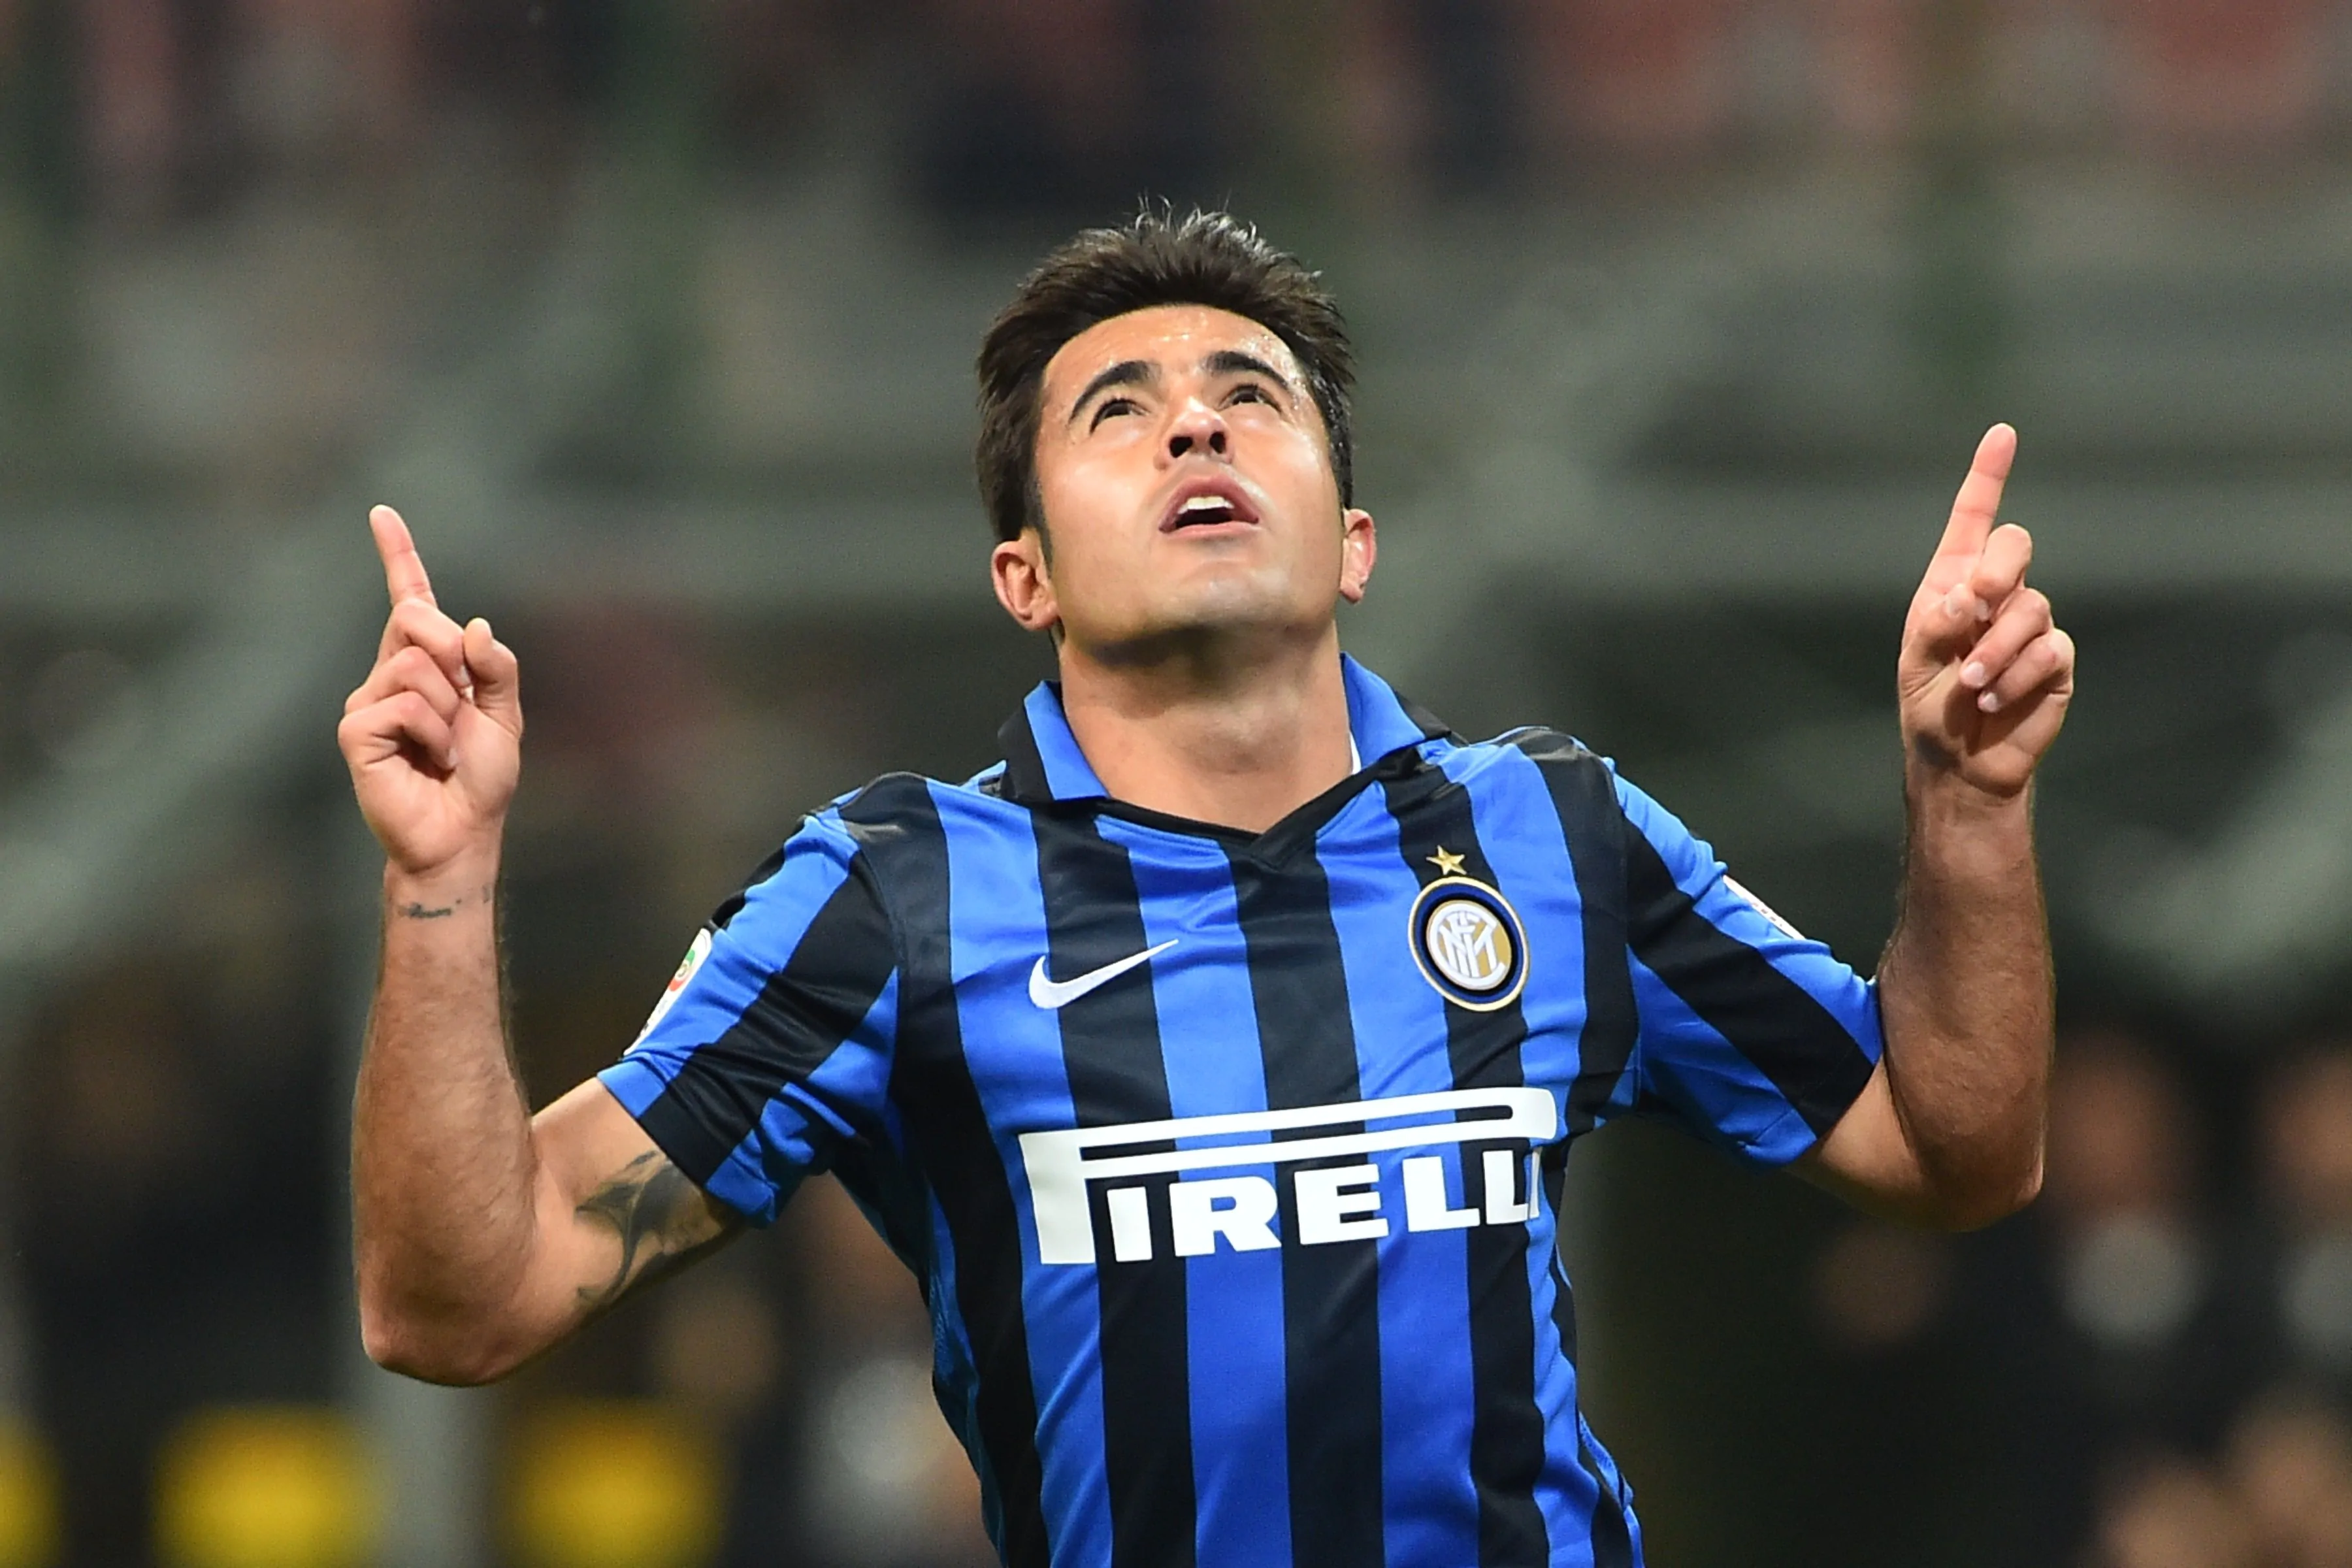 L'Inter ritrova Eder contro l'Empoli. Pioli lo farà giocare con Icardi?